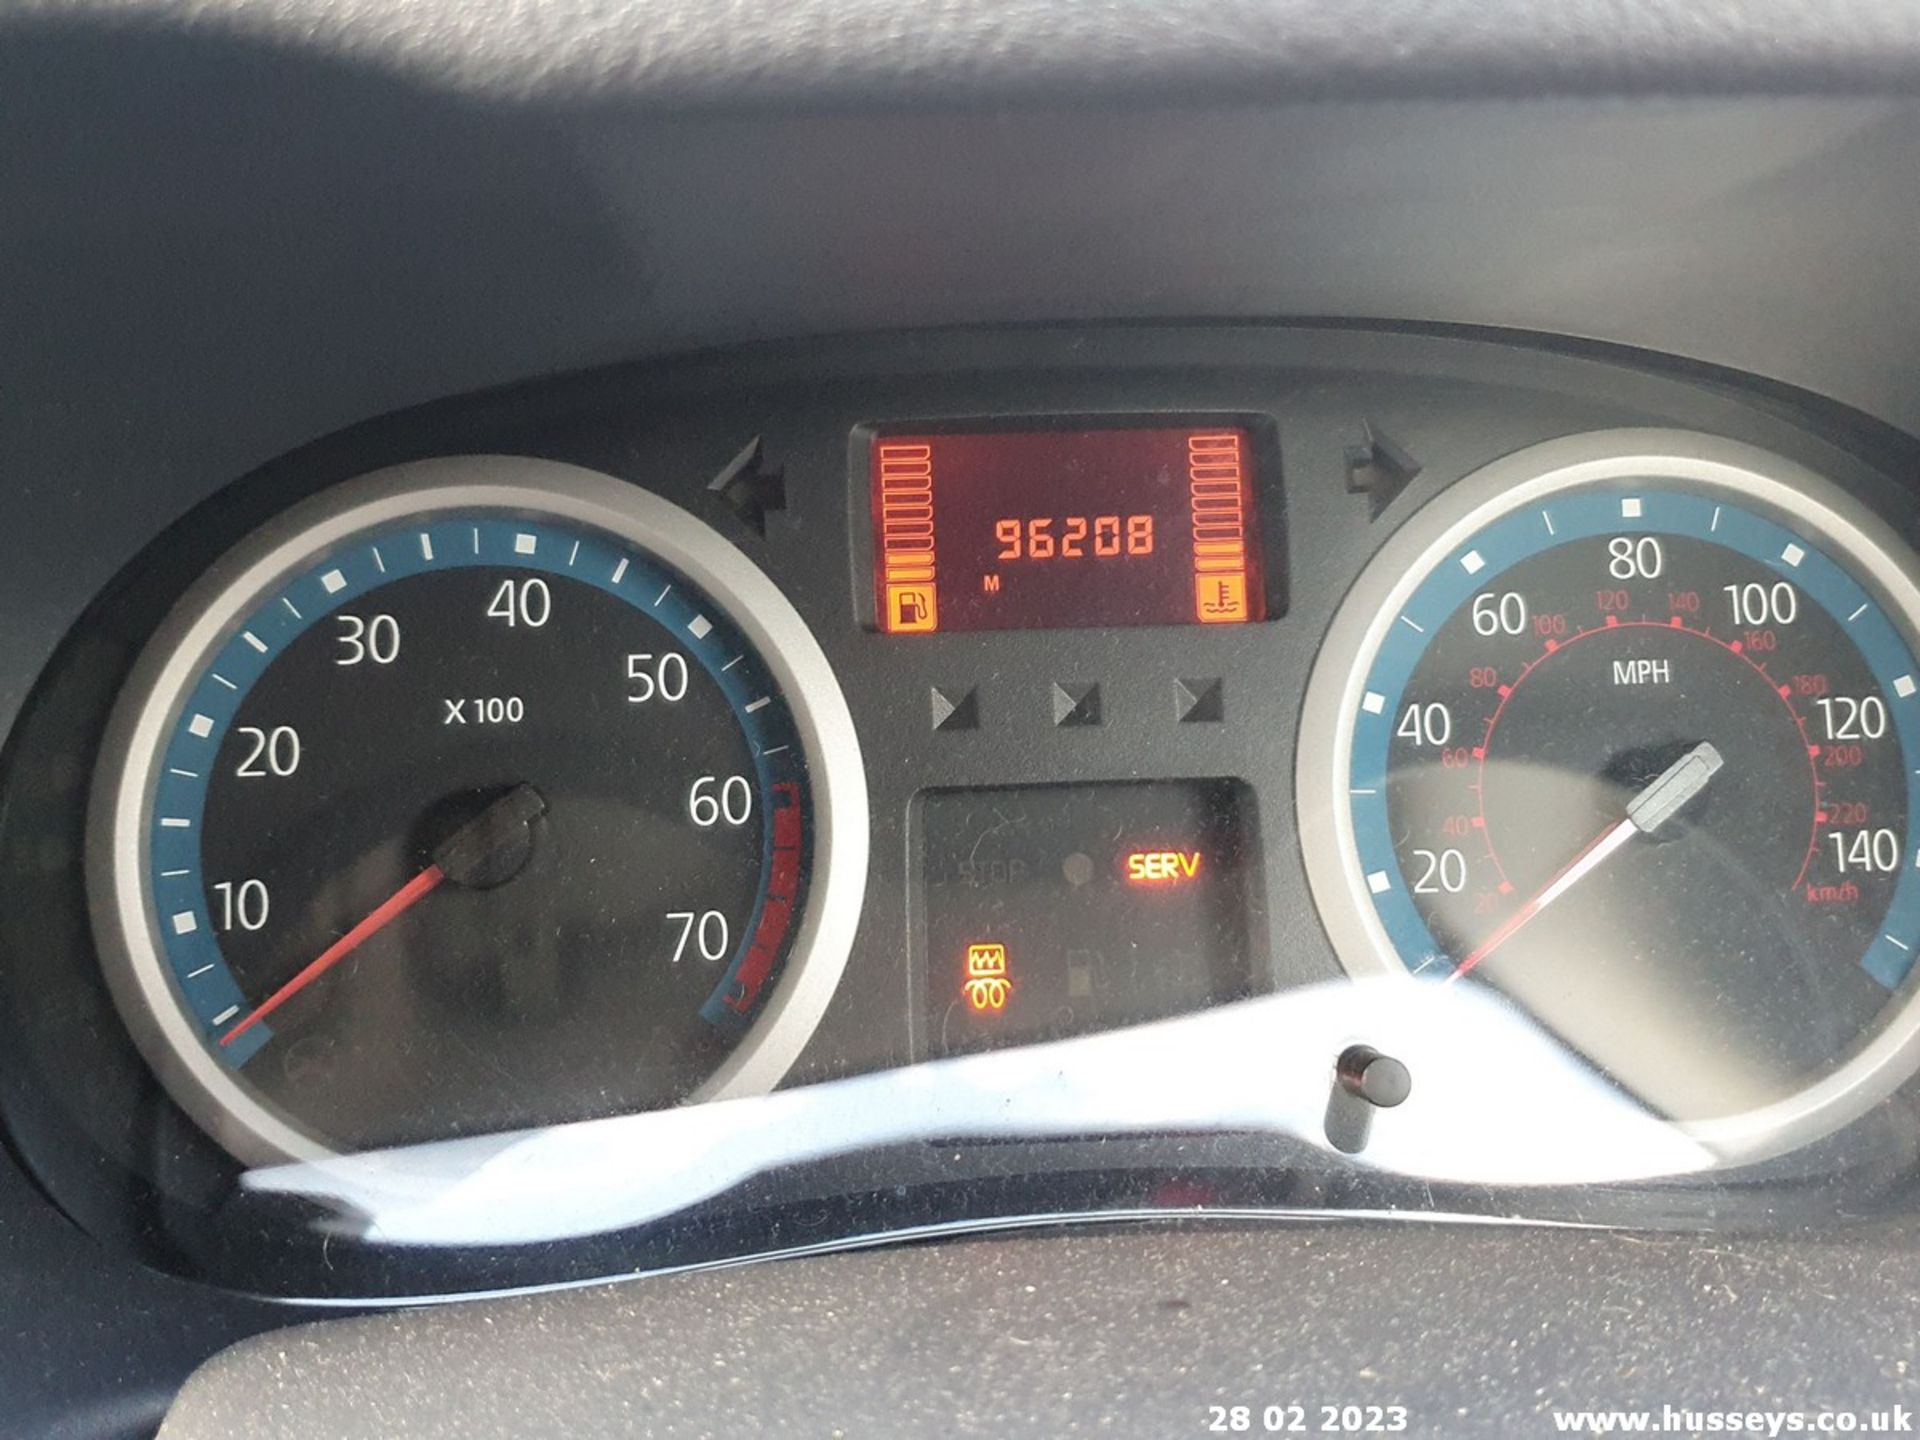 05/05 RENAULT CLIO EXTREME 16V - 1149cc 3dr Hatchback (Black, 961k) - Image 31 of 52